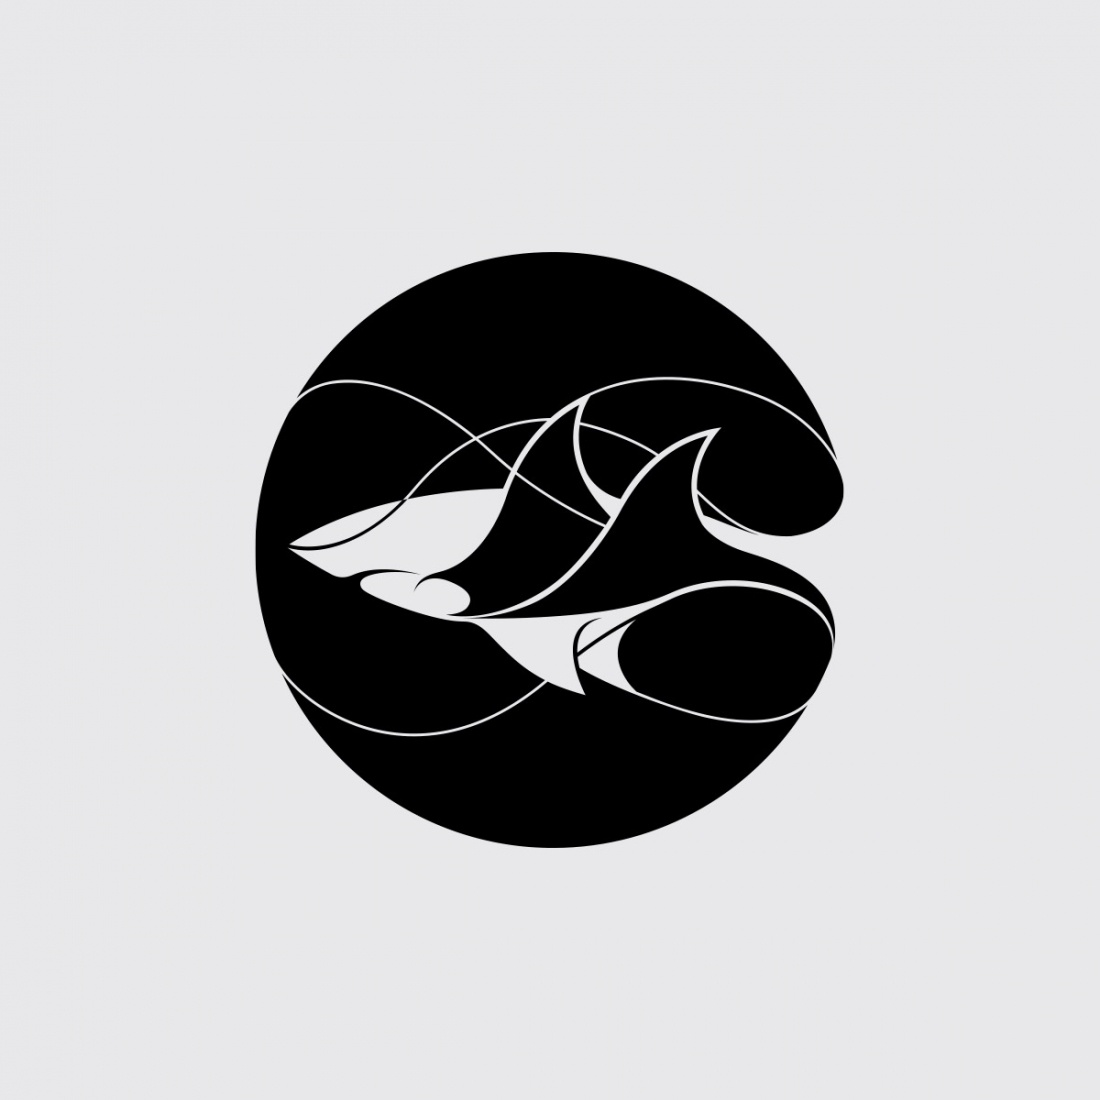 莱昂纳多·迪卡普里奥野生动物保护基金会标志logo设计